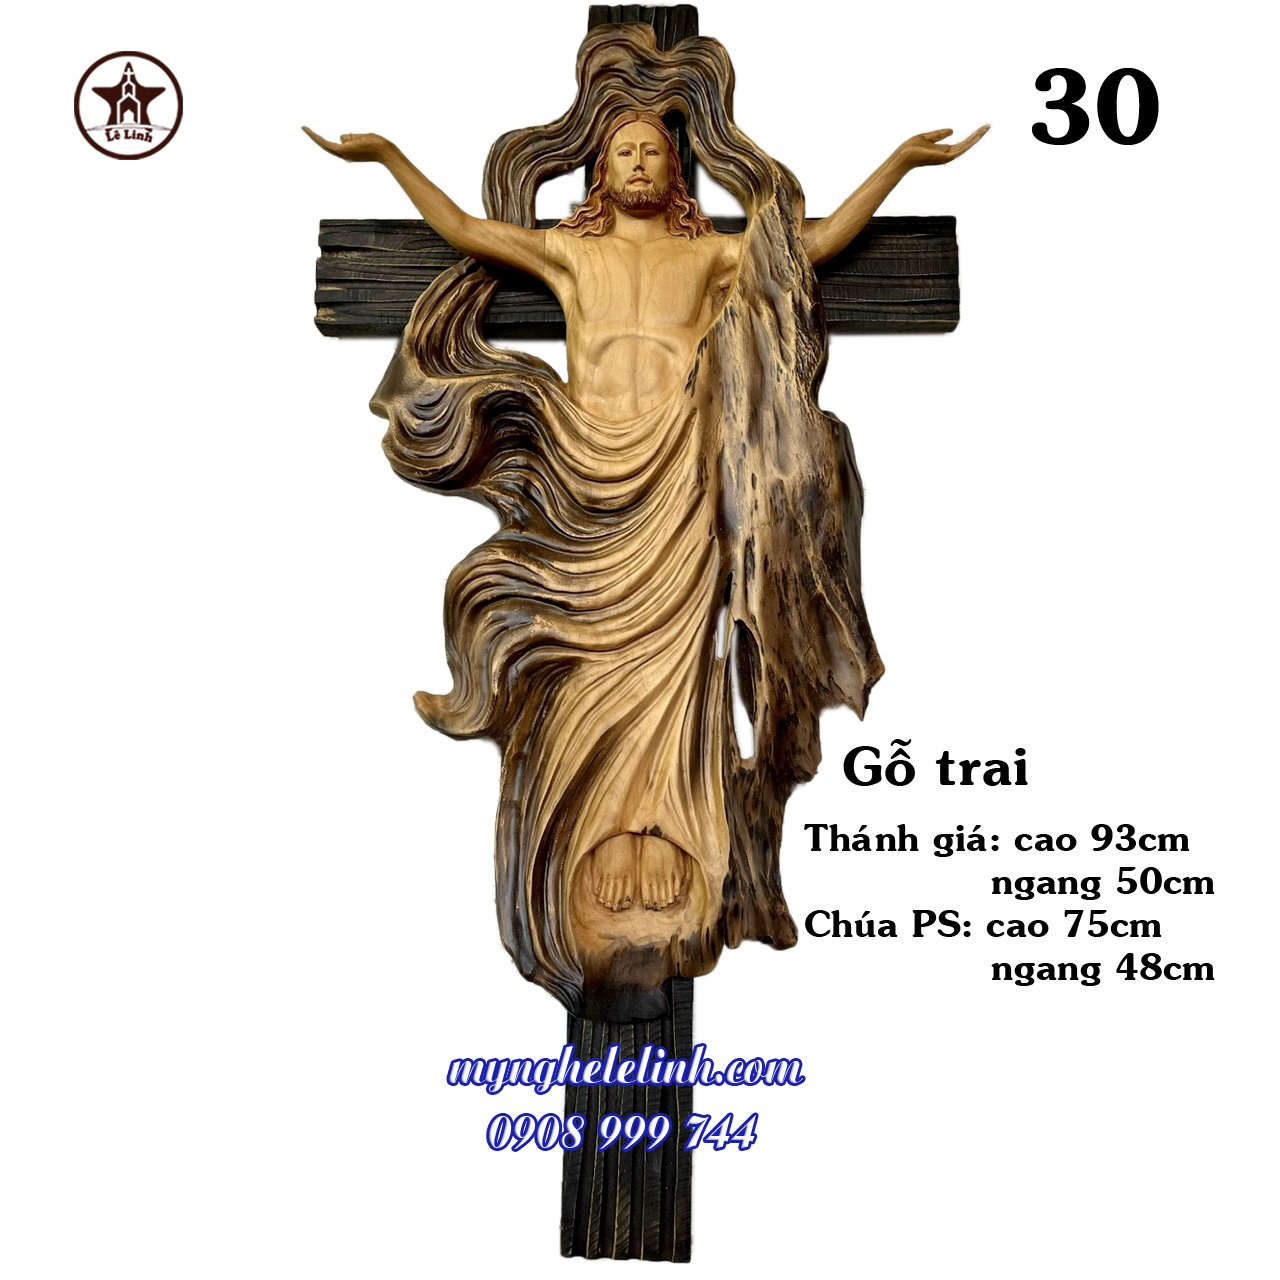 Bàn thờ Công Giáo mẫu C83- tượng cao 50cm